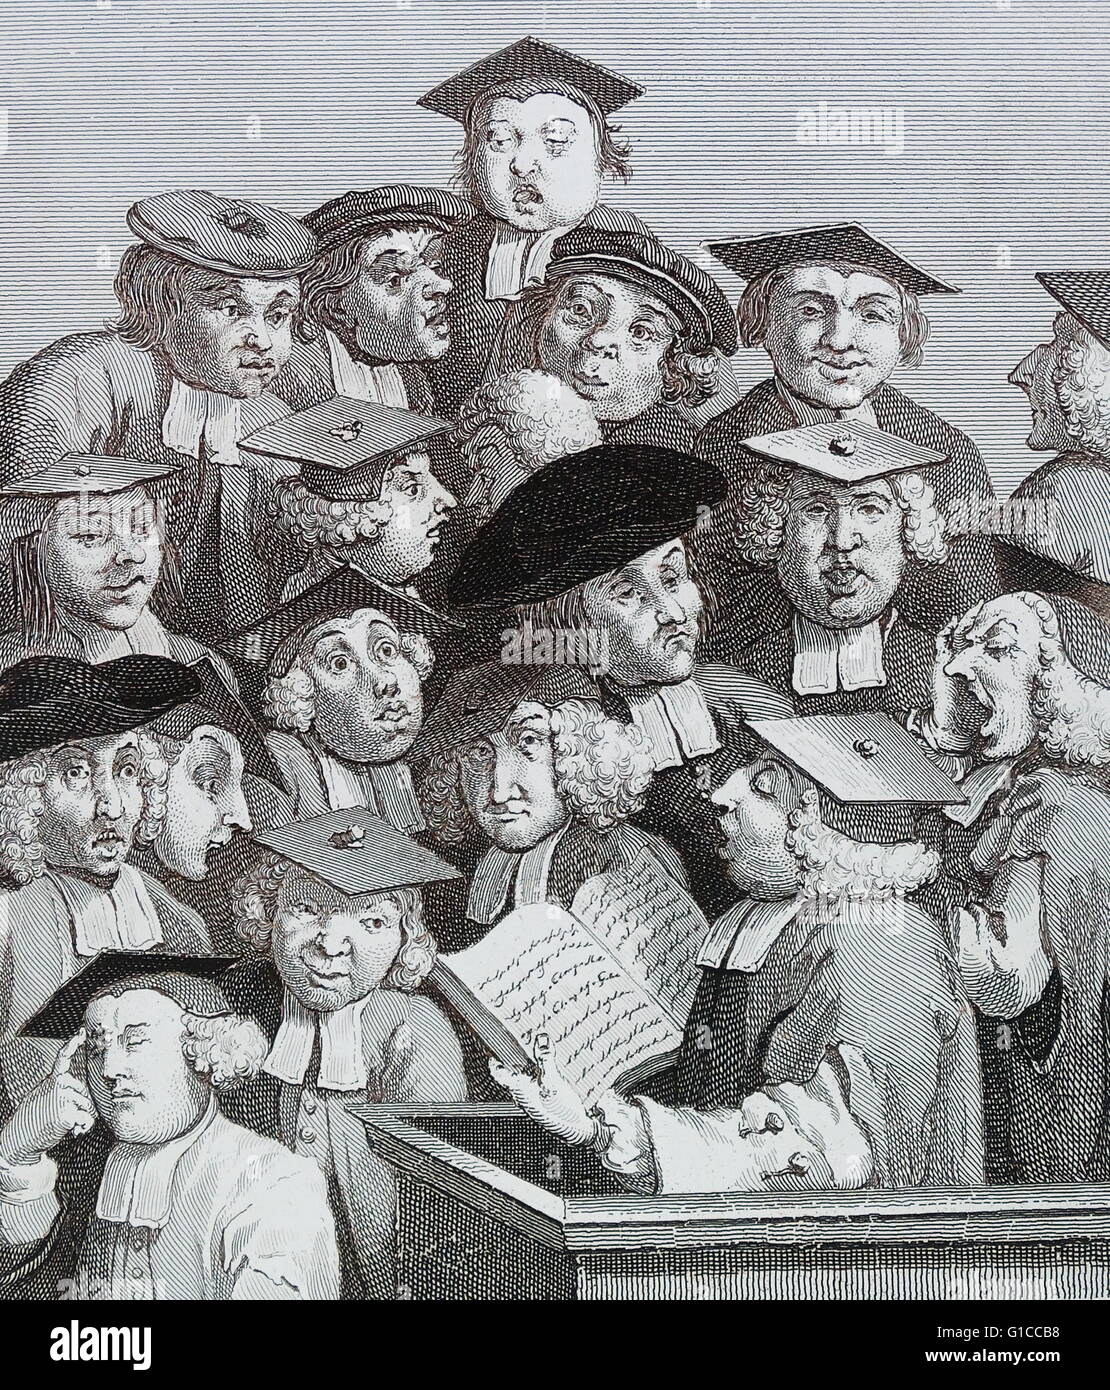 Wissenschaftler in einem Vortrag von William Hogarth von William Hogarth (1697-1764). Englischer Maler, Grafiker, bildhafte Satiriker. Stockfoto